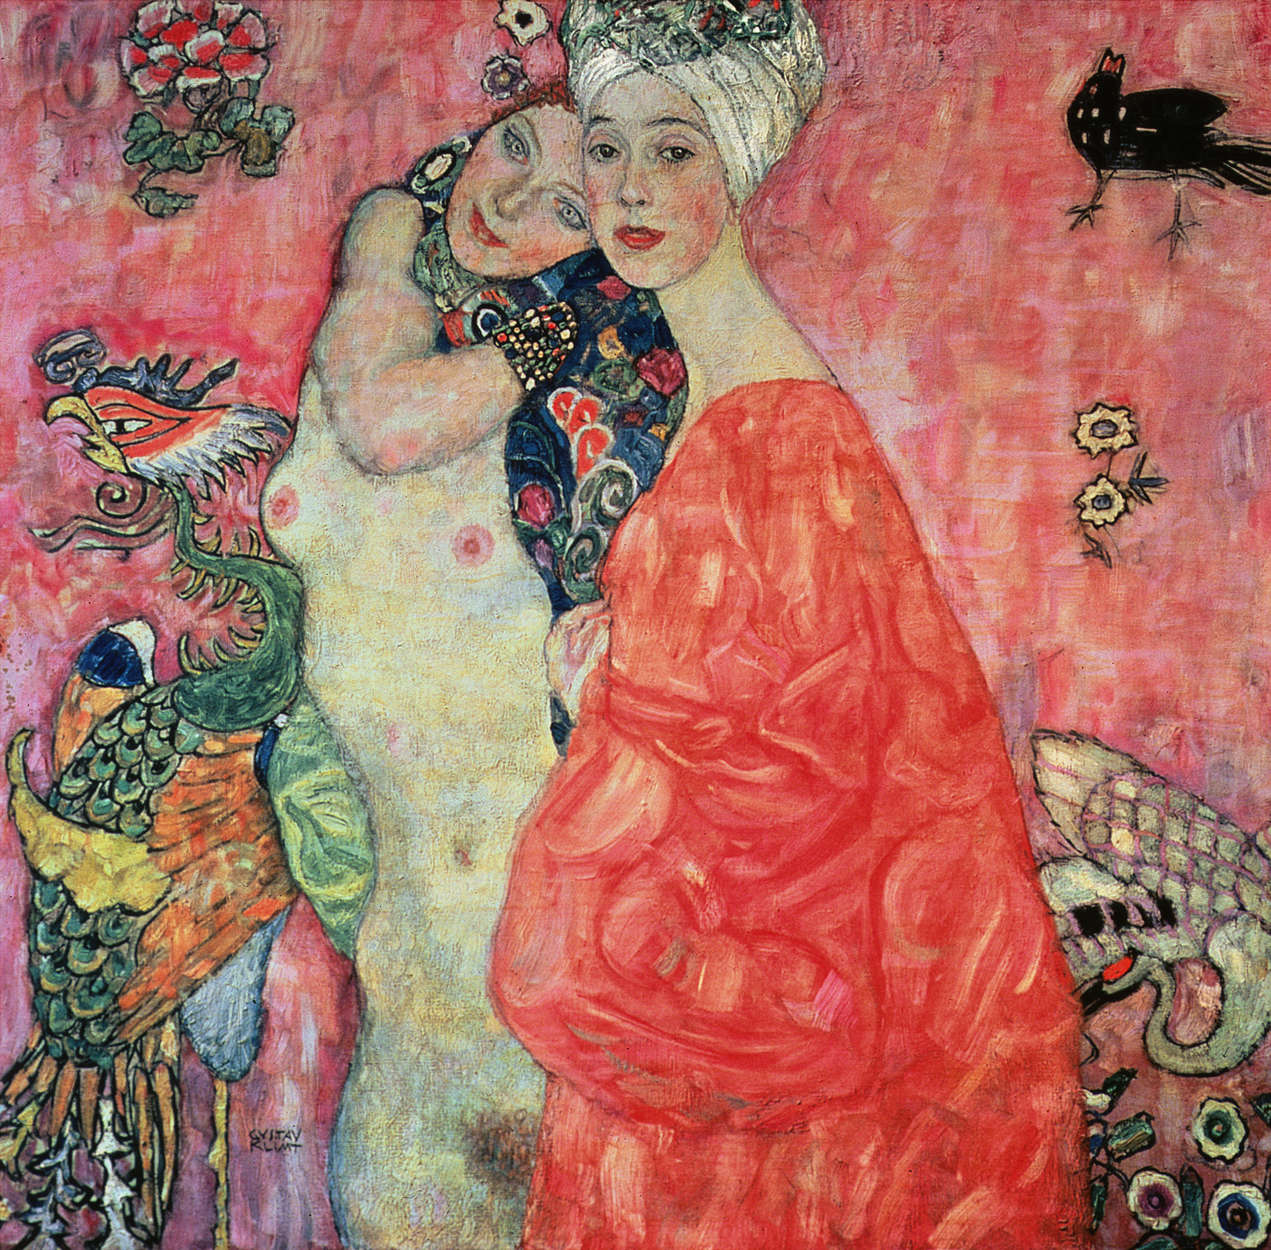             De vriendinnen" muurschildering van Gustav Klimt
        